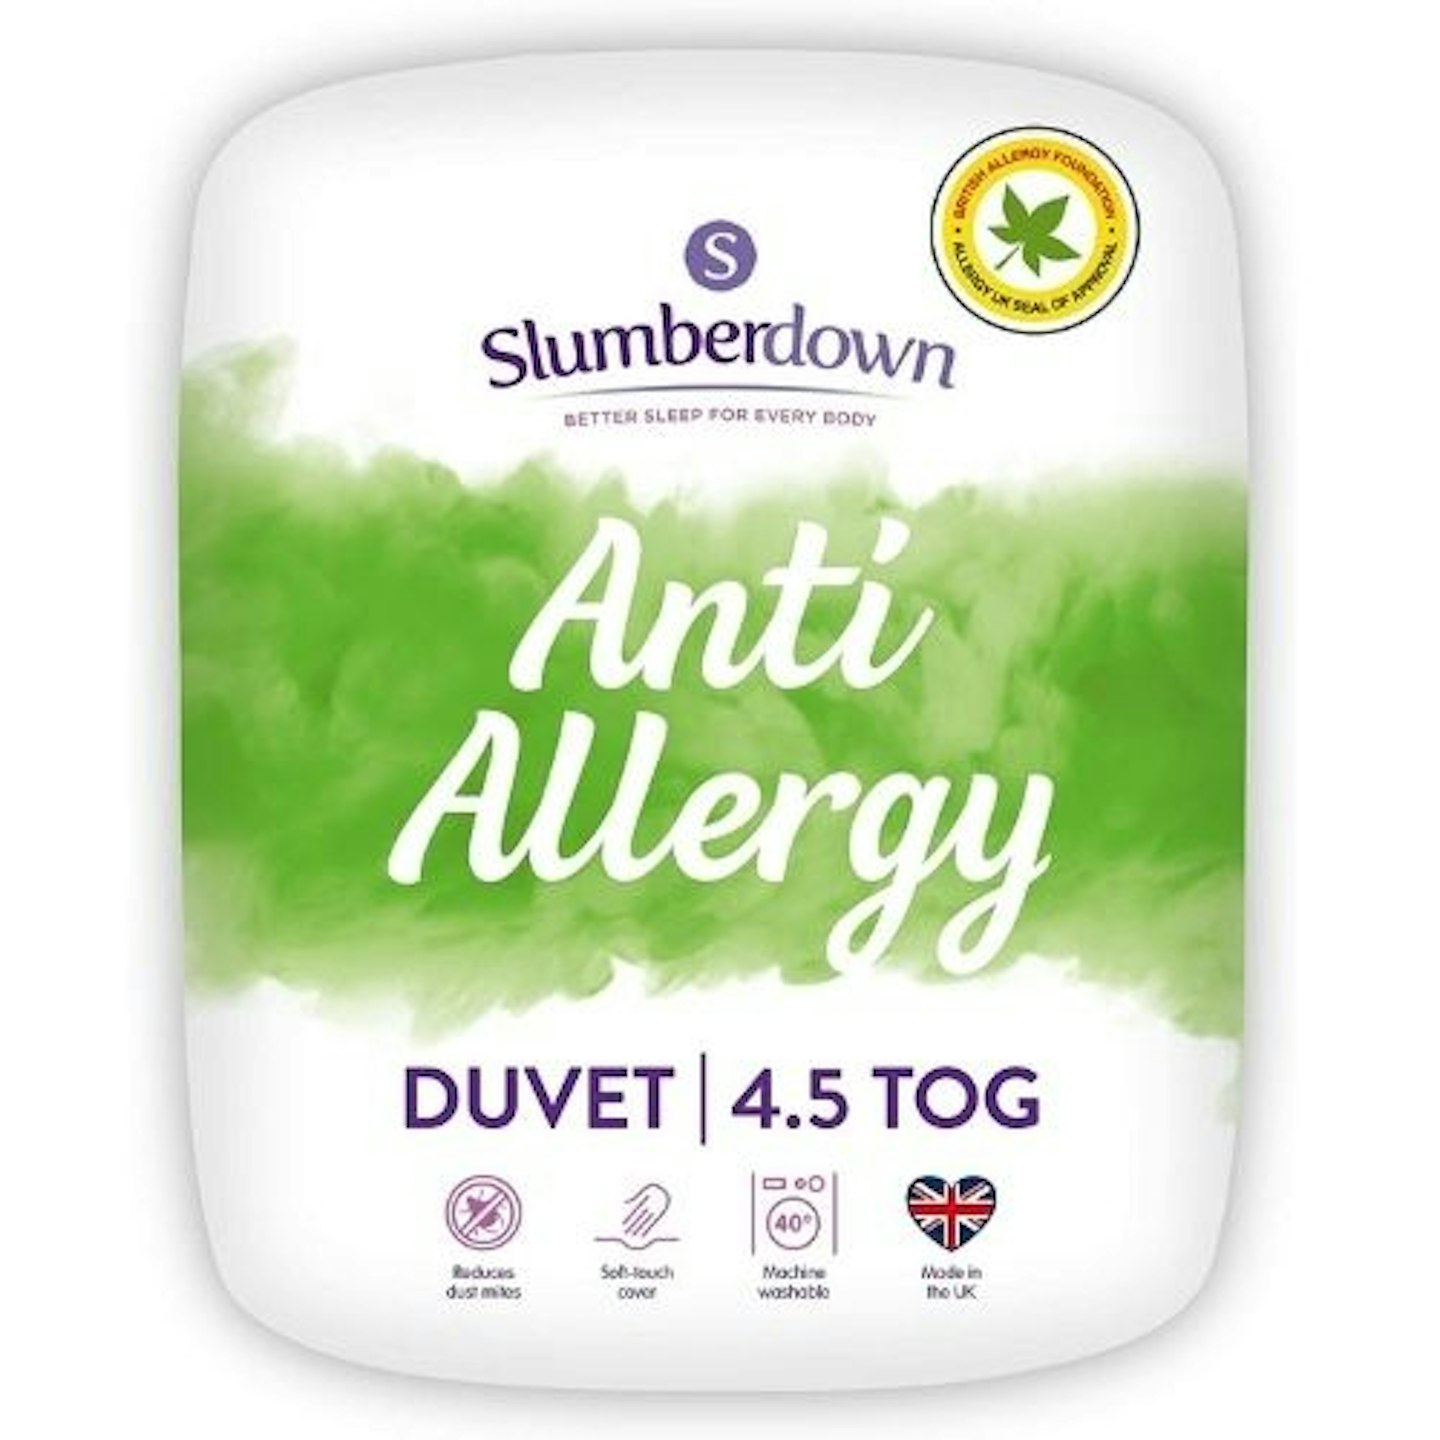 Slumberdown Anti-Allergy King Size Duvet u2013 4.5 Tog